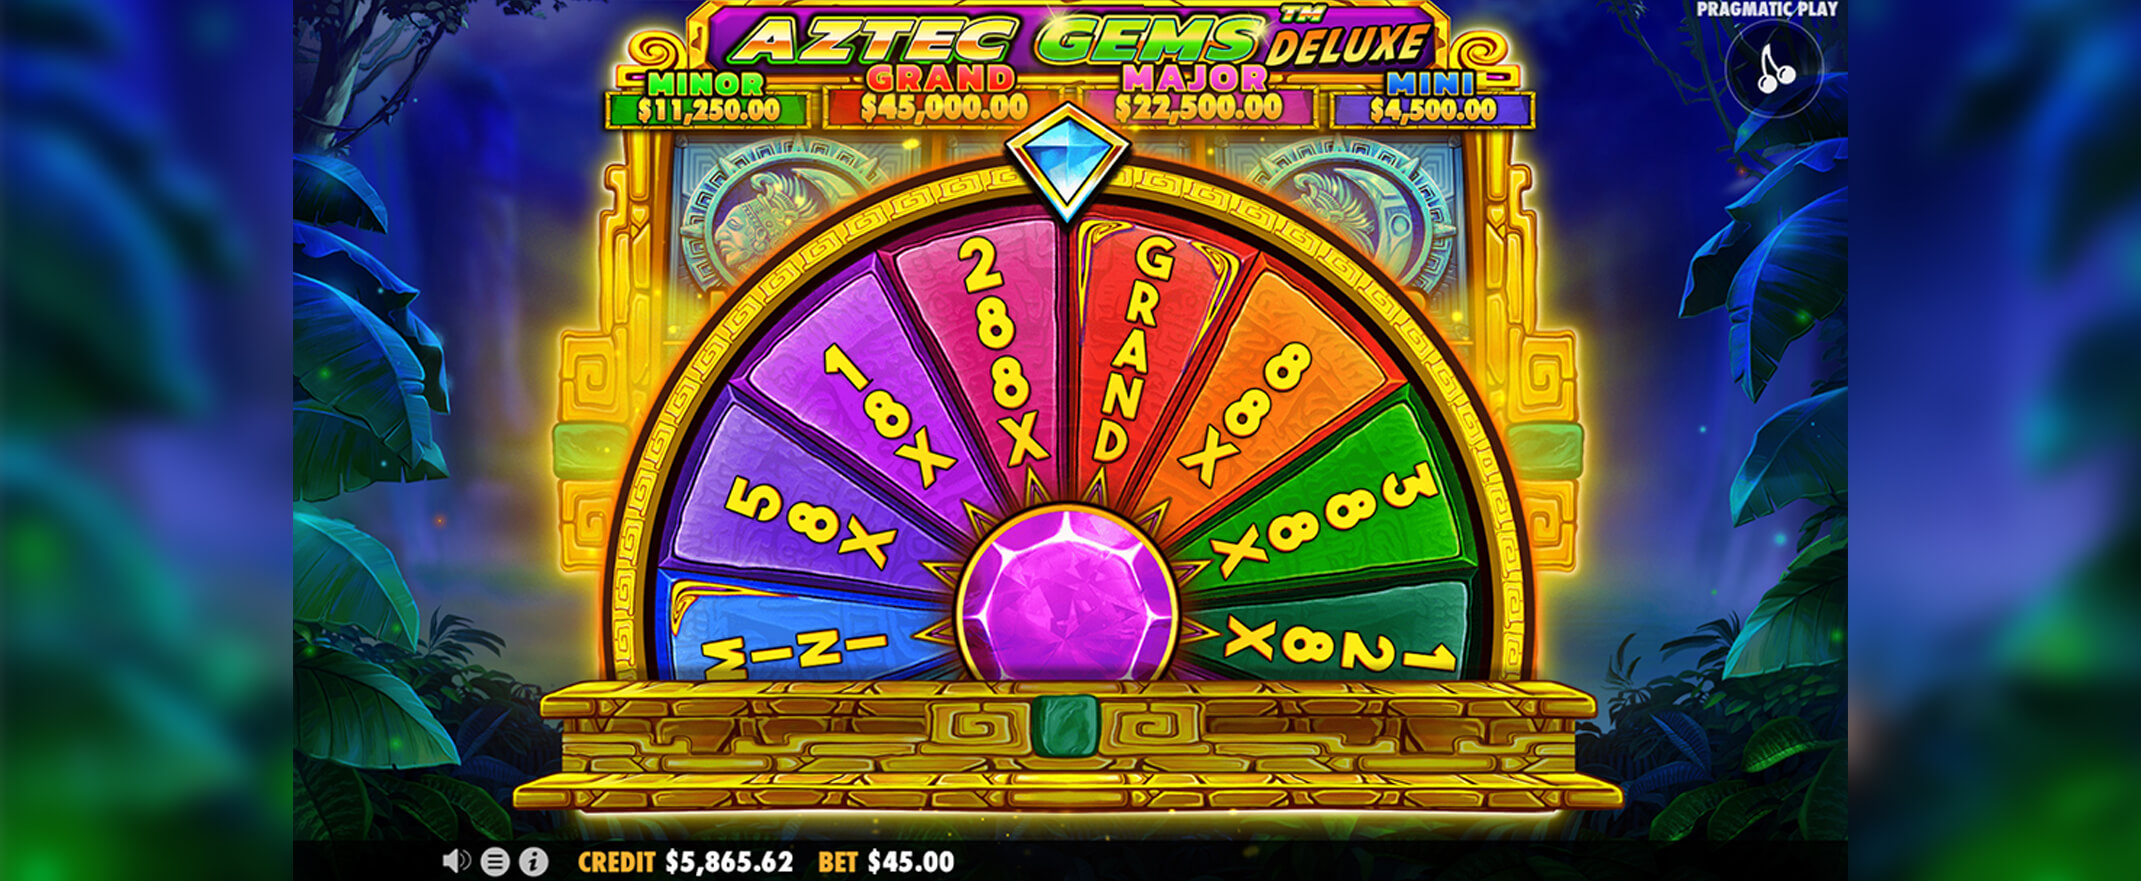 Aztec Gems Deluxe Spielautomaten Bewertung - Bildschirmaufnahme des Slots